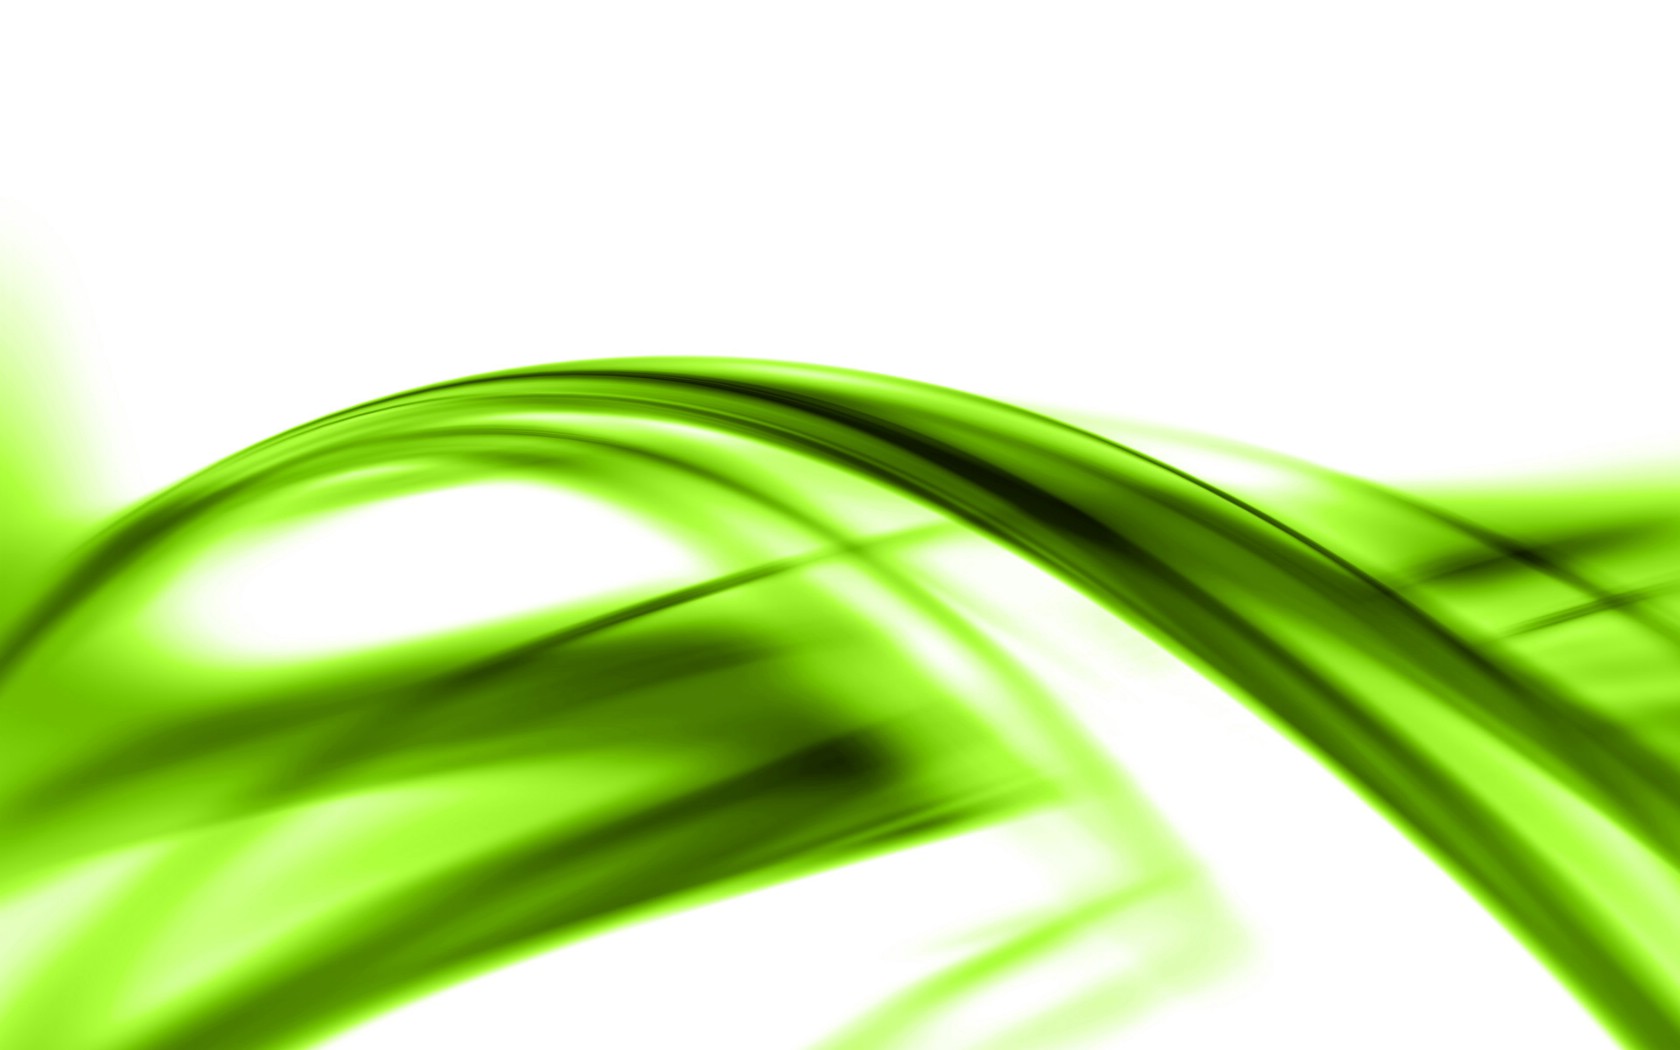 壁纸1680x1050PS效果绿色光线壁纸 PS效果绿色光线壁纸 PS效果绿色光线图片 PS效果绿色光线素材 创意壁纸 创意图库 创意图片素材桌面壁纸